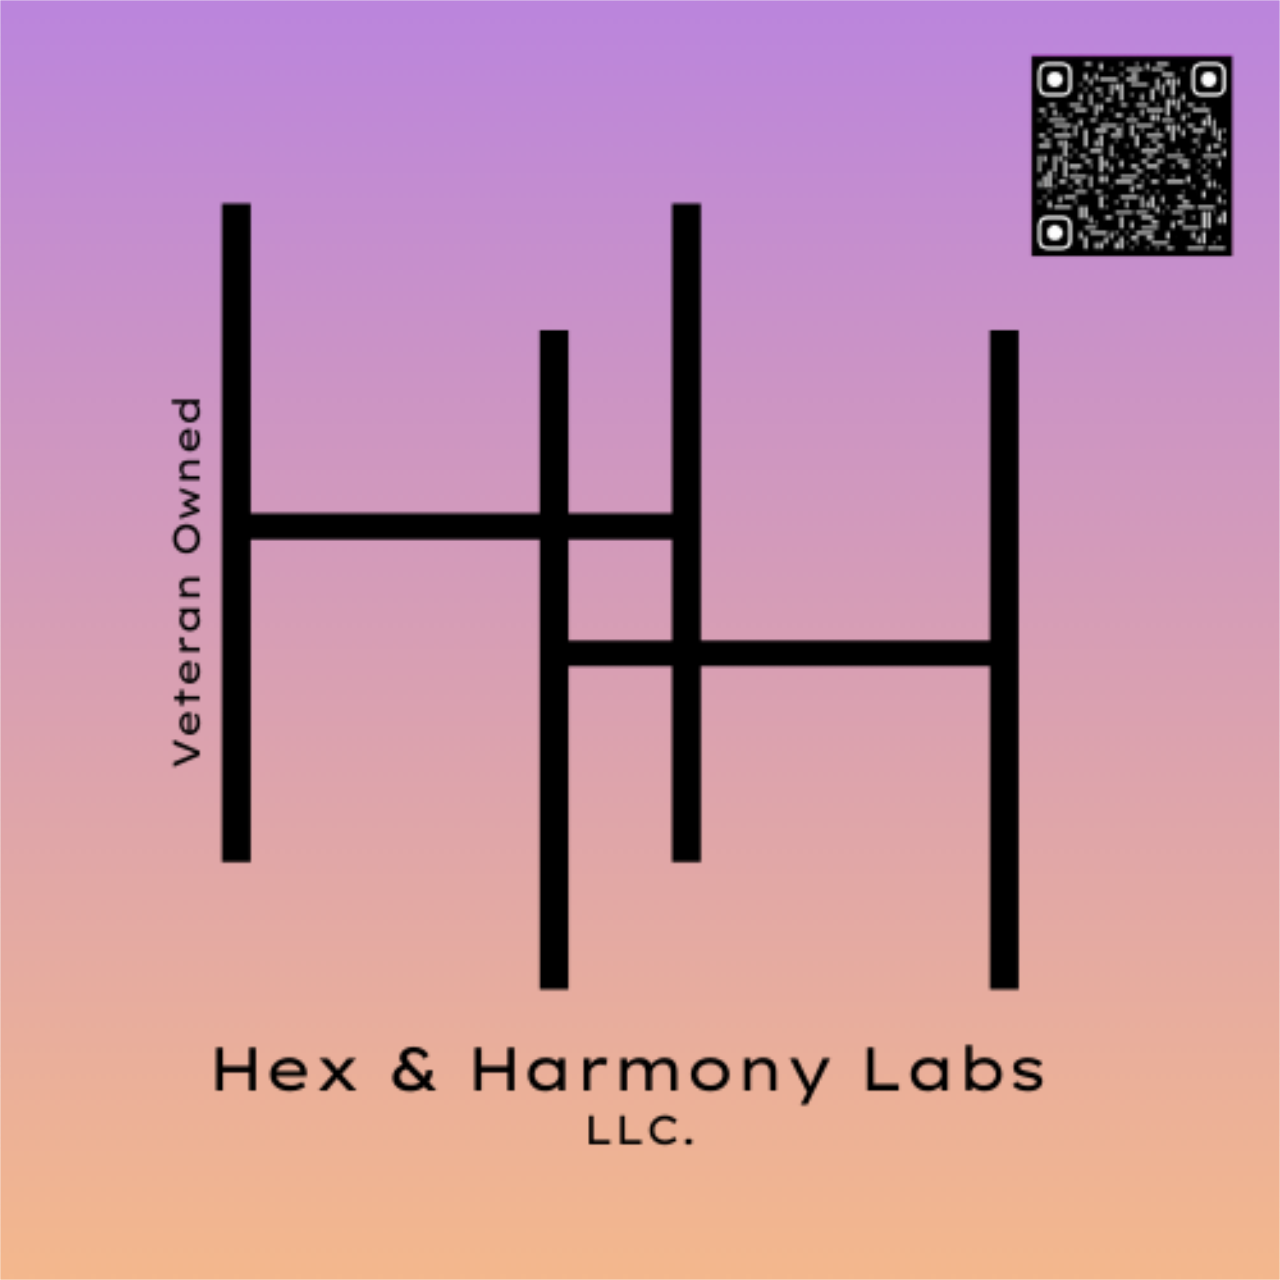 Hex & harmony labs's logo